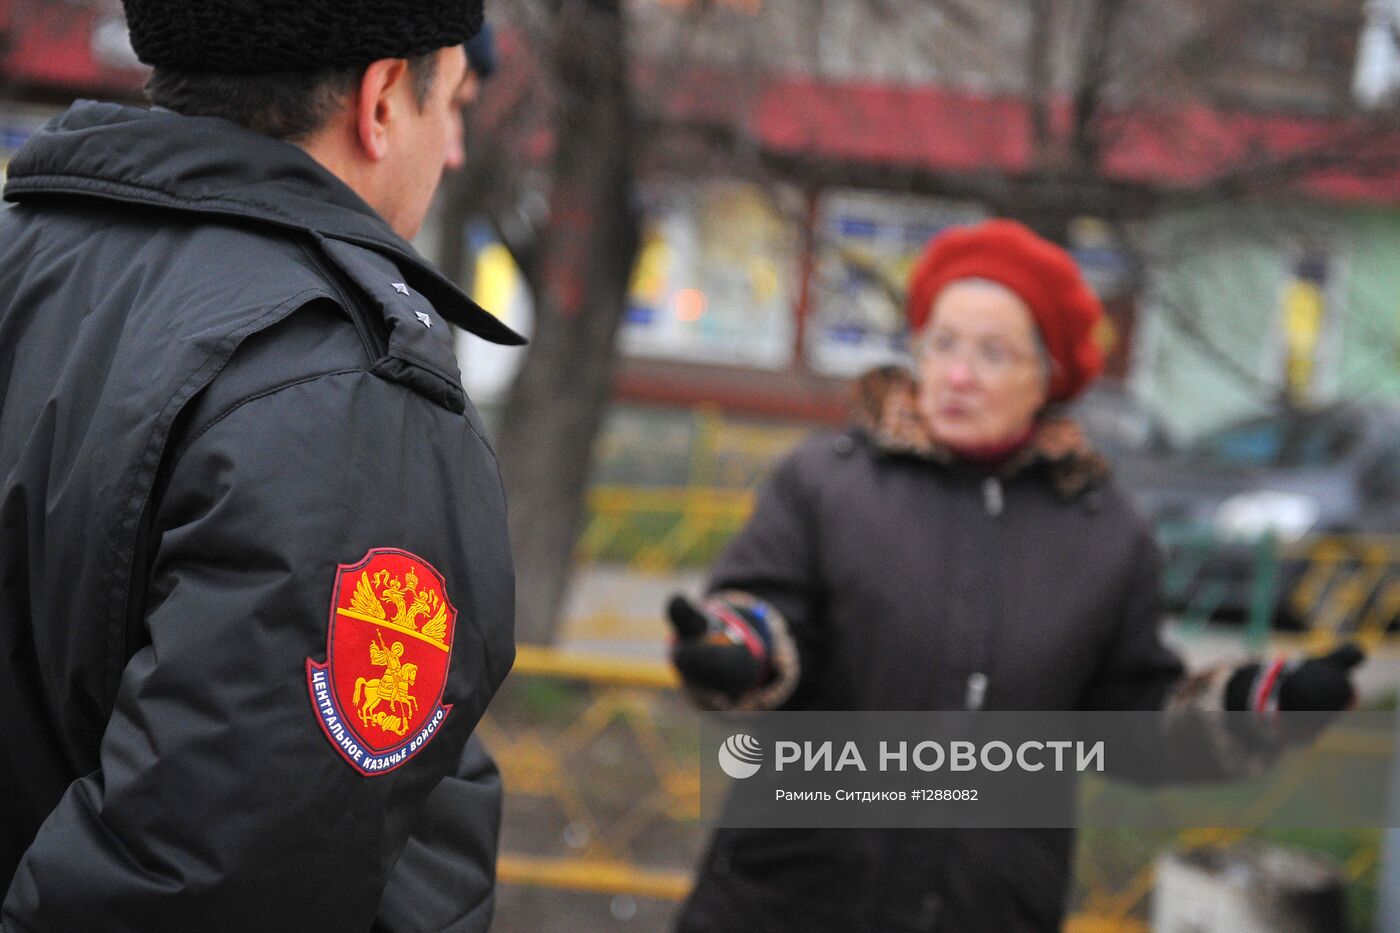 Патрули казачьих дружин появились в Москве